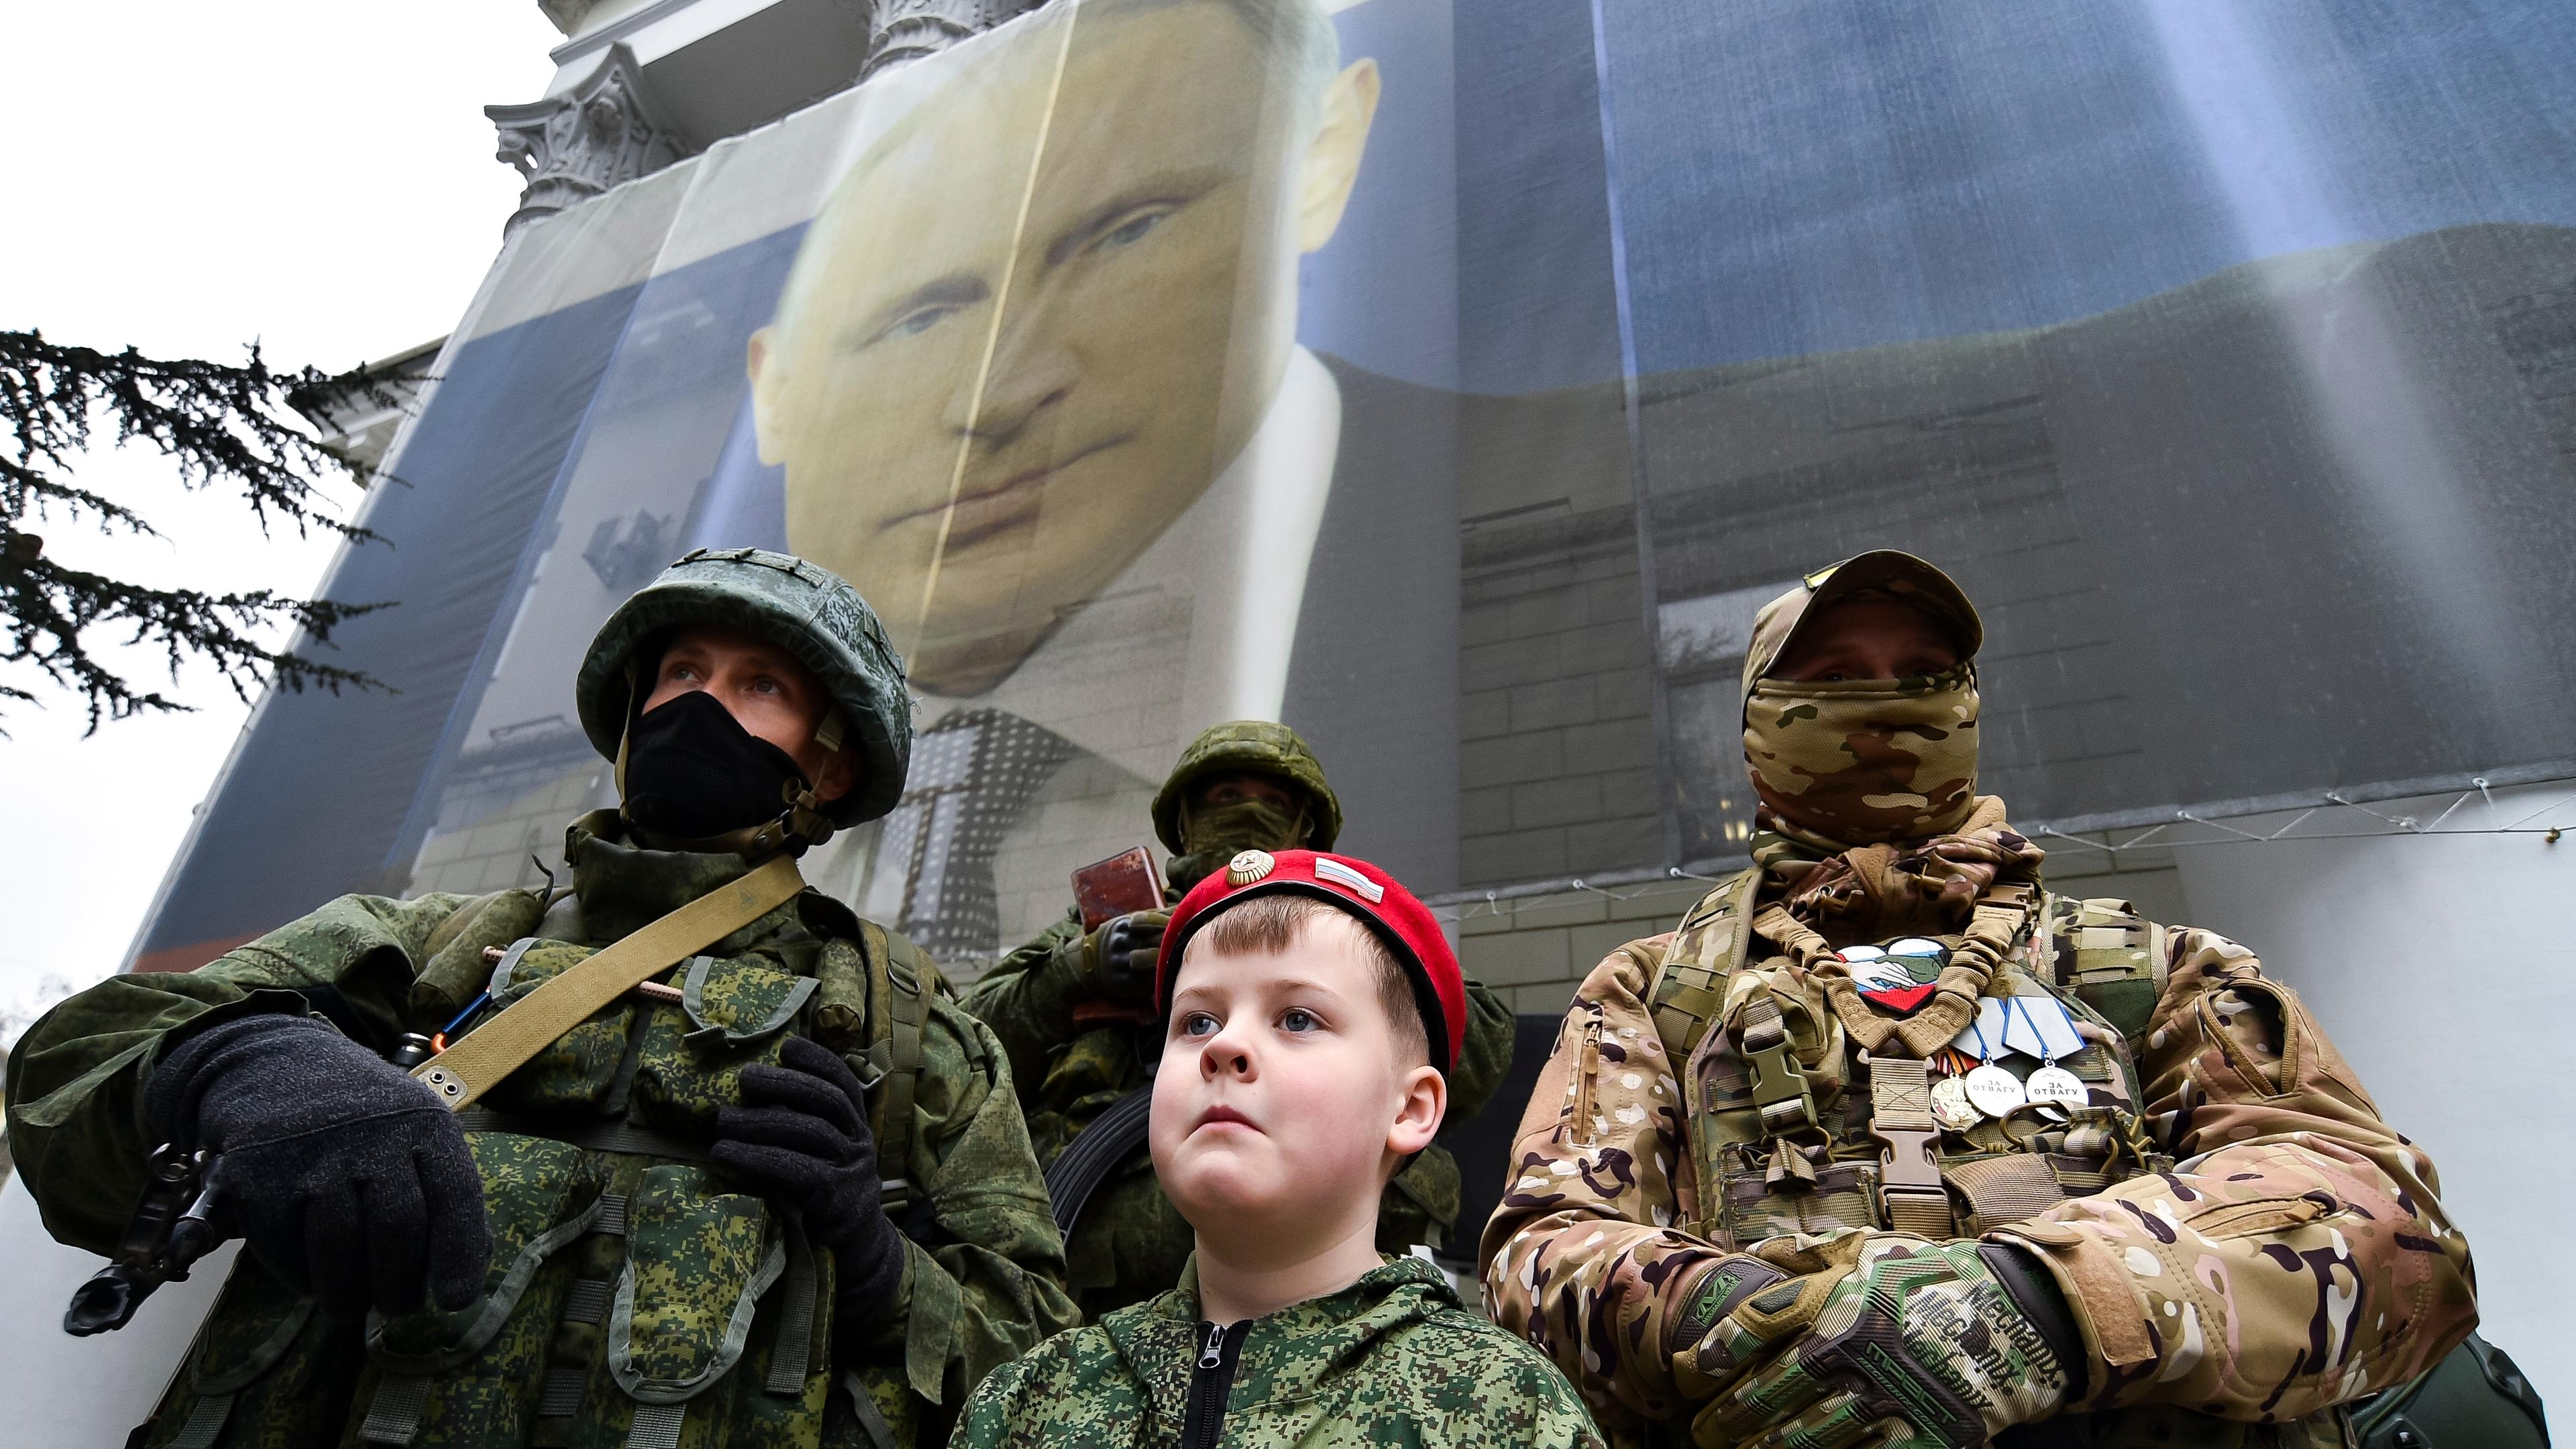 Ein Junge steht vor zwei russischen Soldaten, im Hintergrund ist das Gesicht Putins auf eine Hauswand gemalt. Die Soldaten und der Junge nehmen an einer Aktion zum neunten Jahrestag der Krim-Annexion teil.